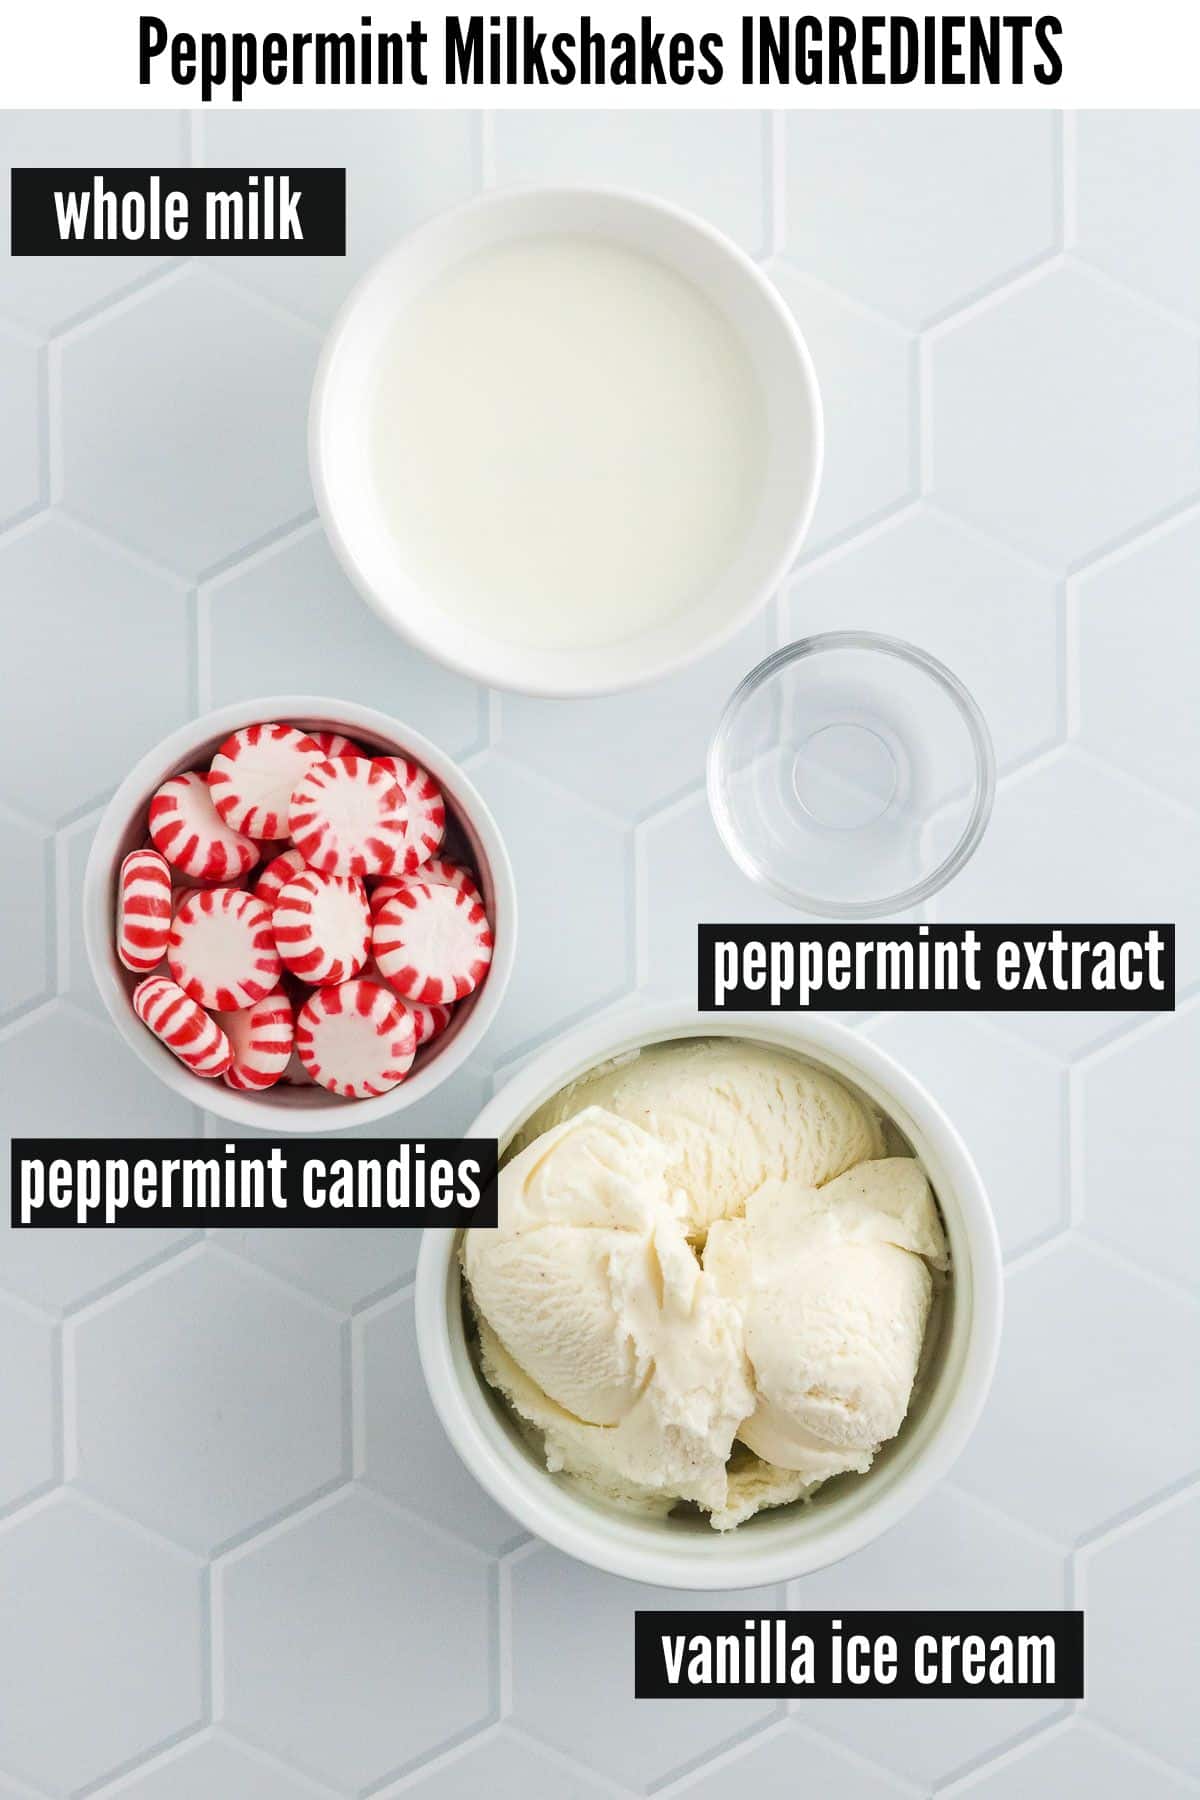 peppermint milkshakes labelled ingredients.